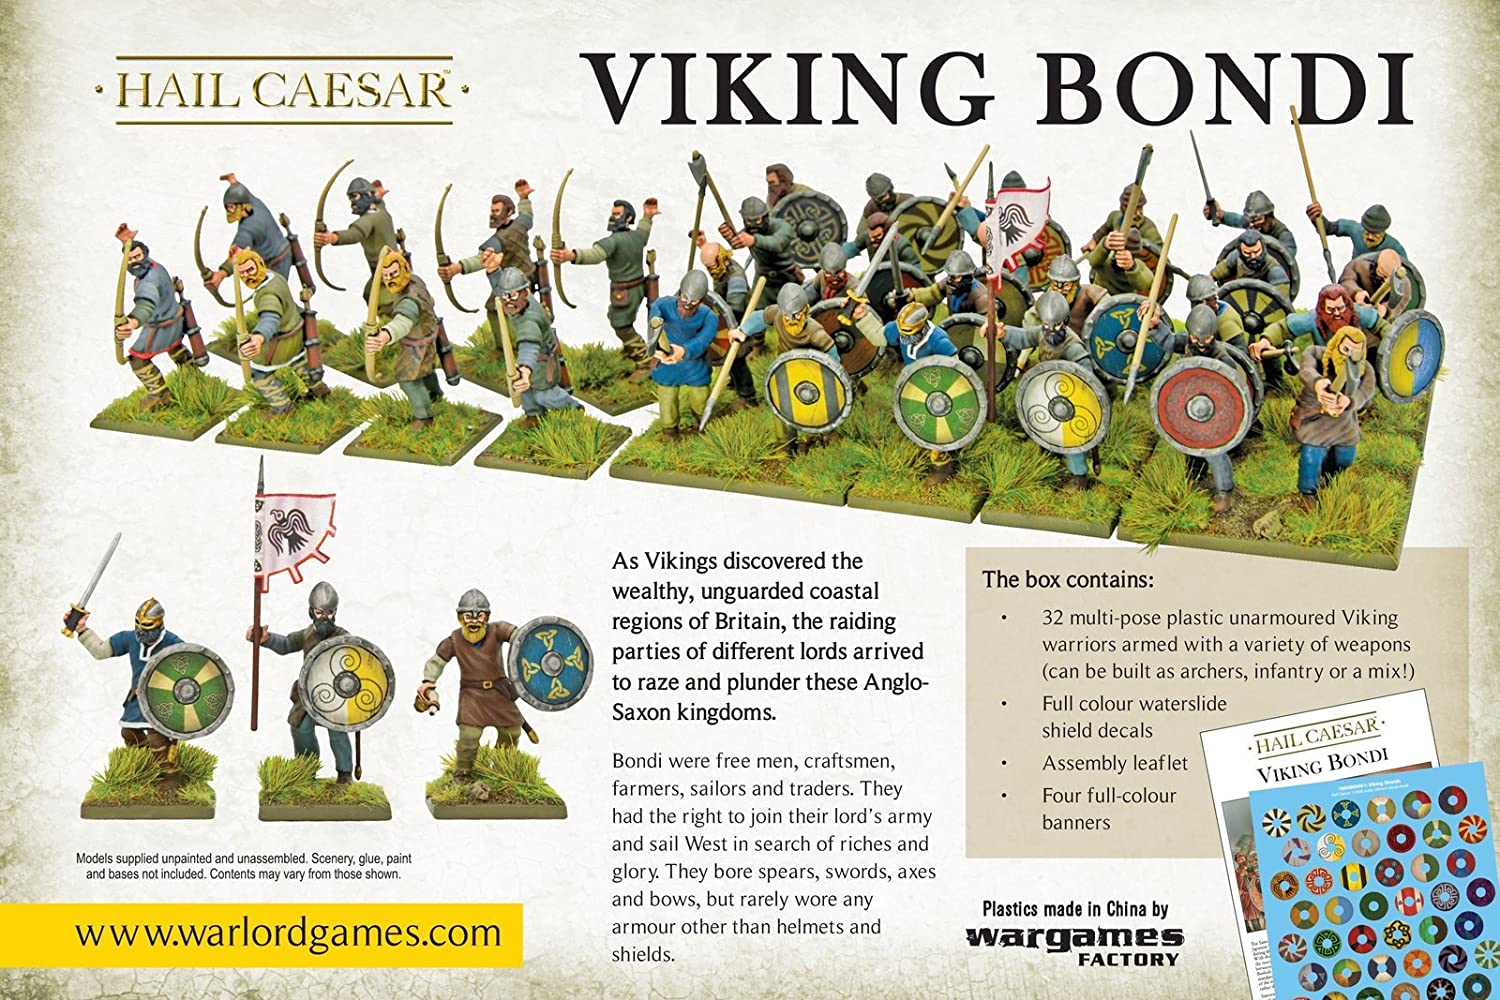 Hail Caesar - Viking Bondi